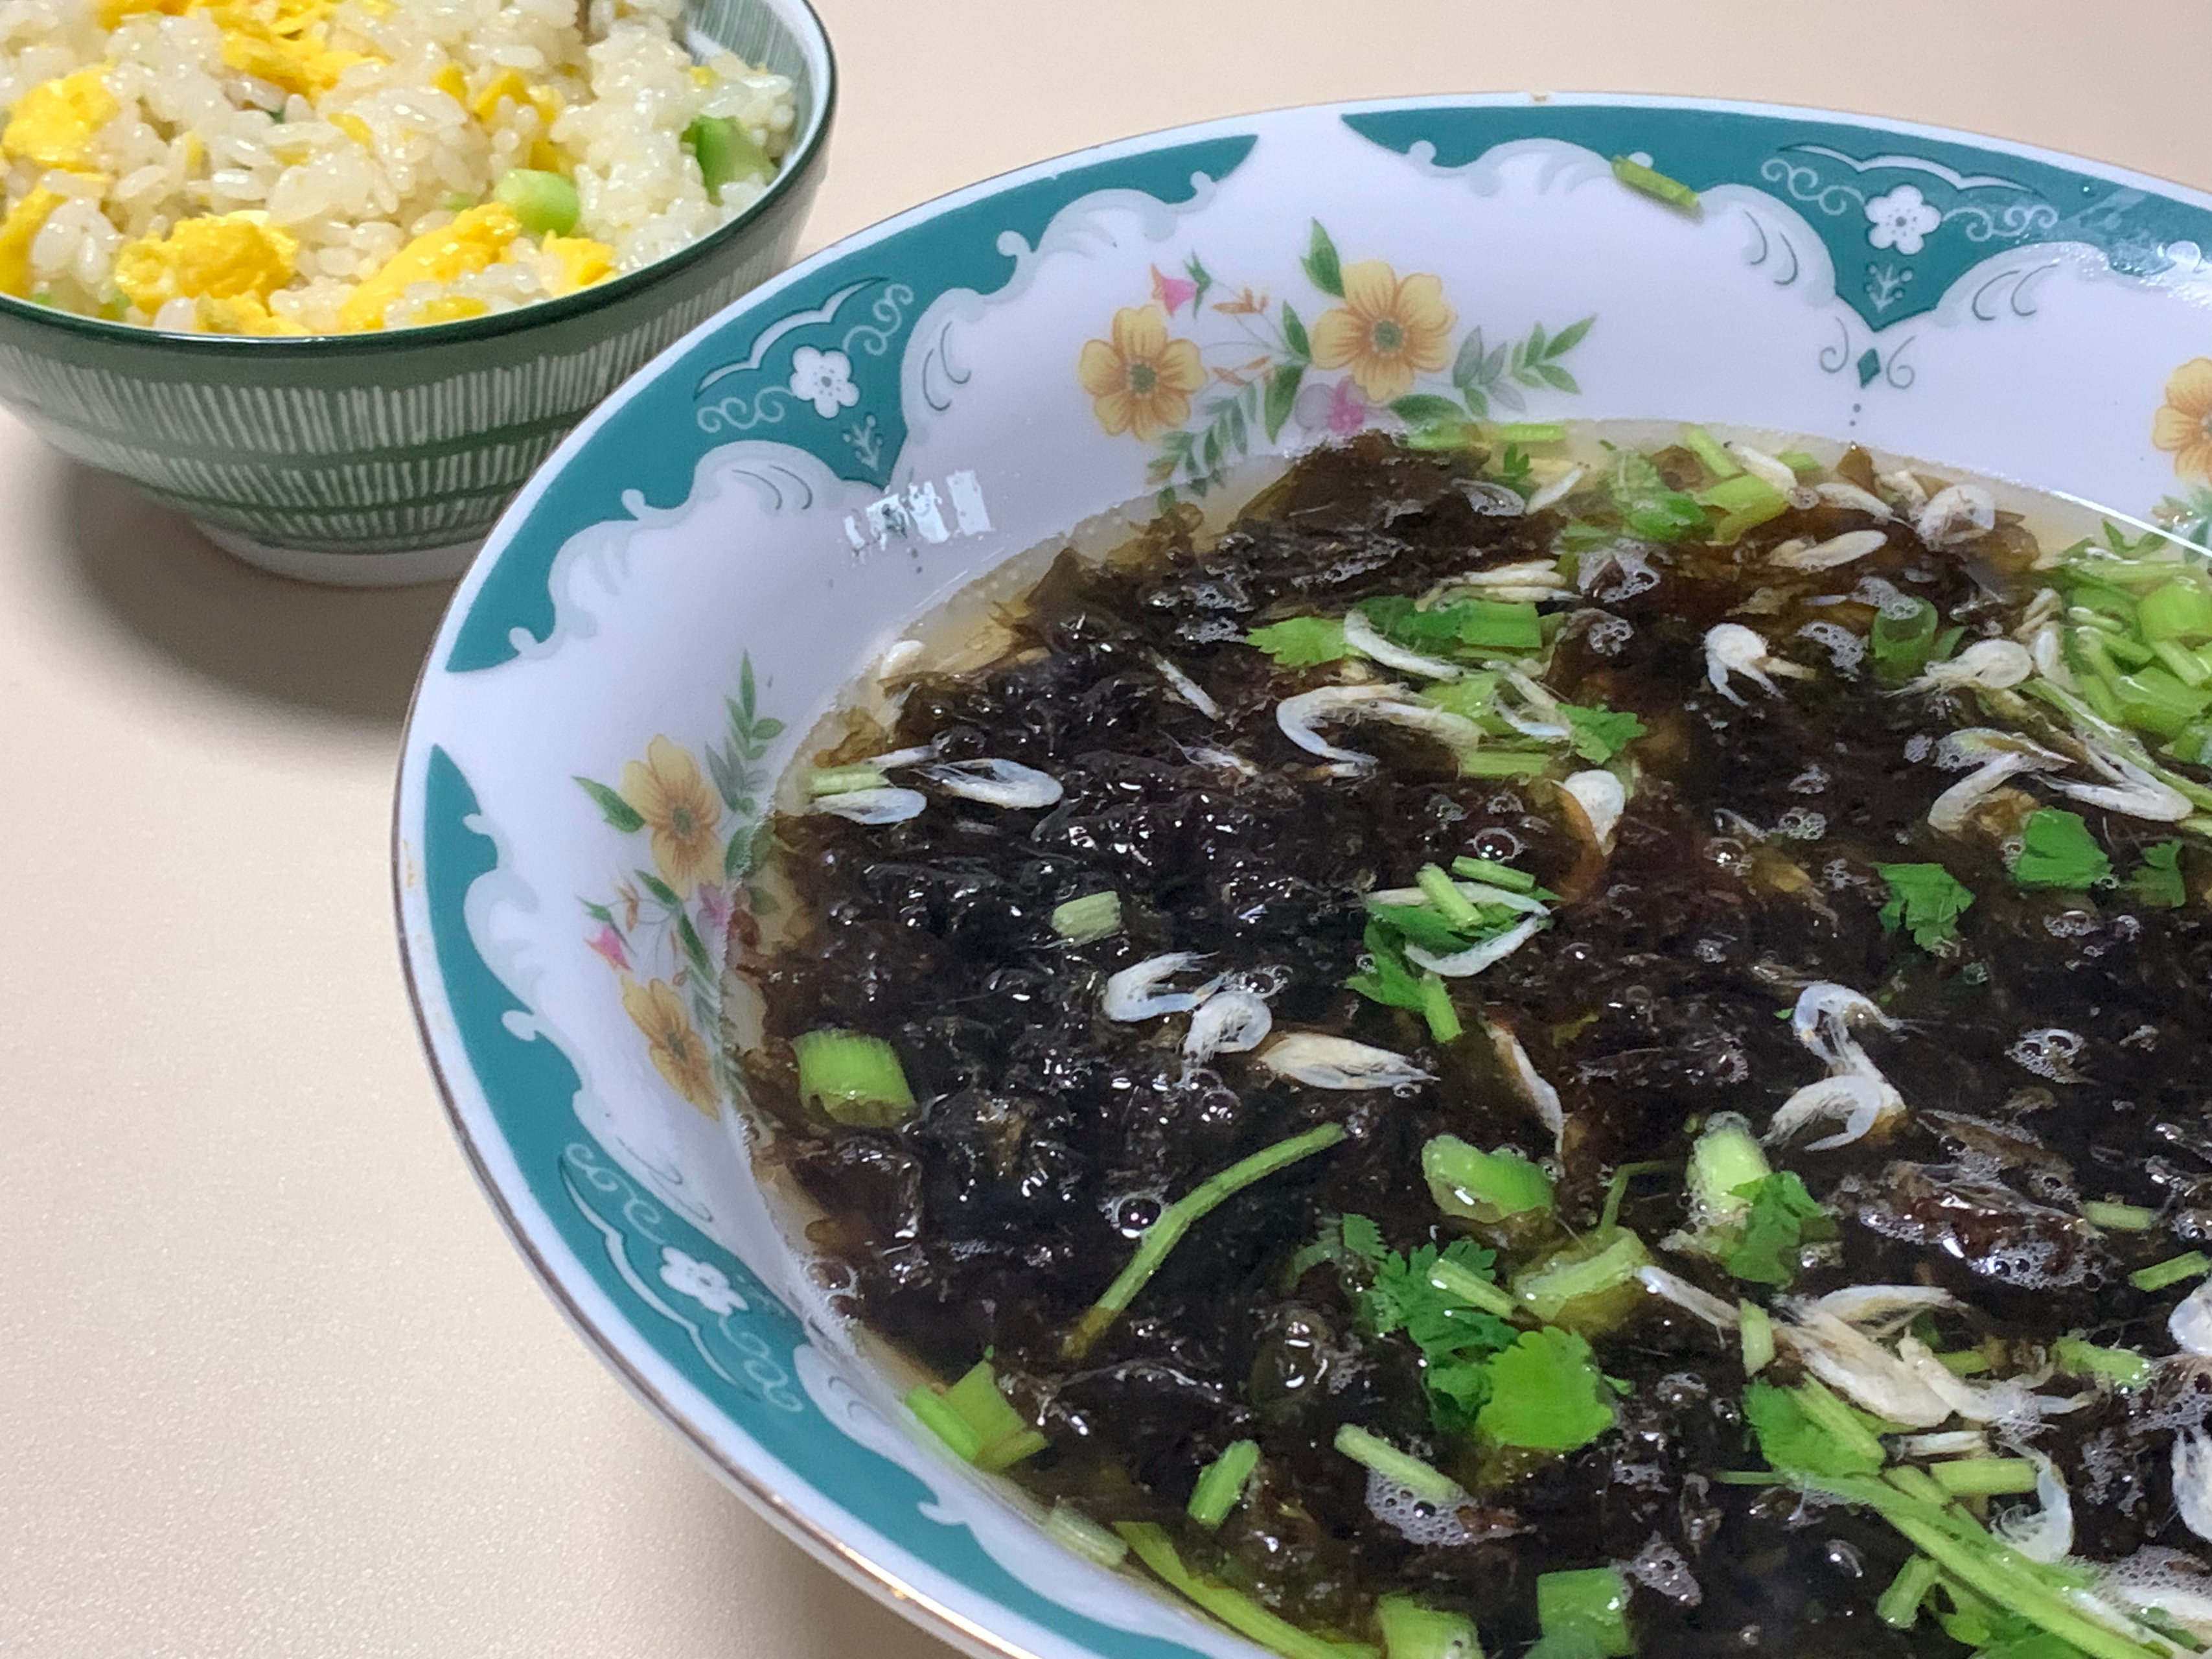 虾皮紫菜汤